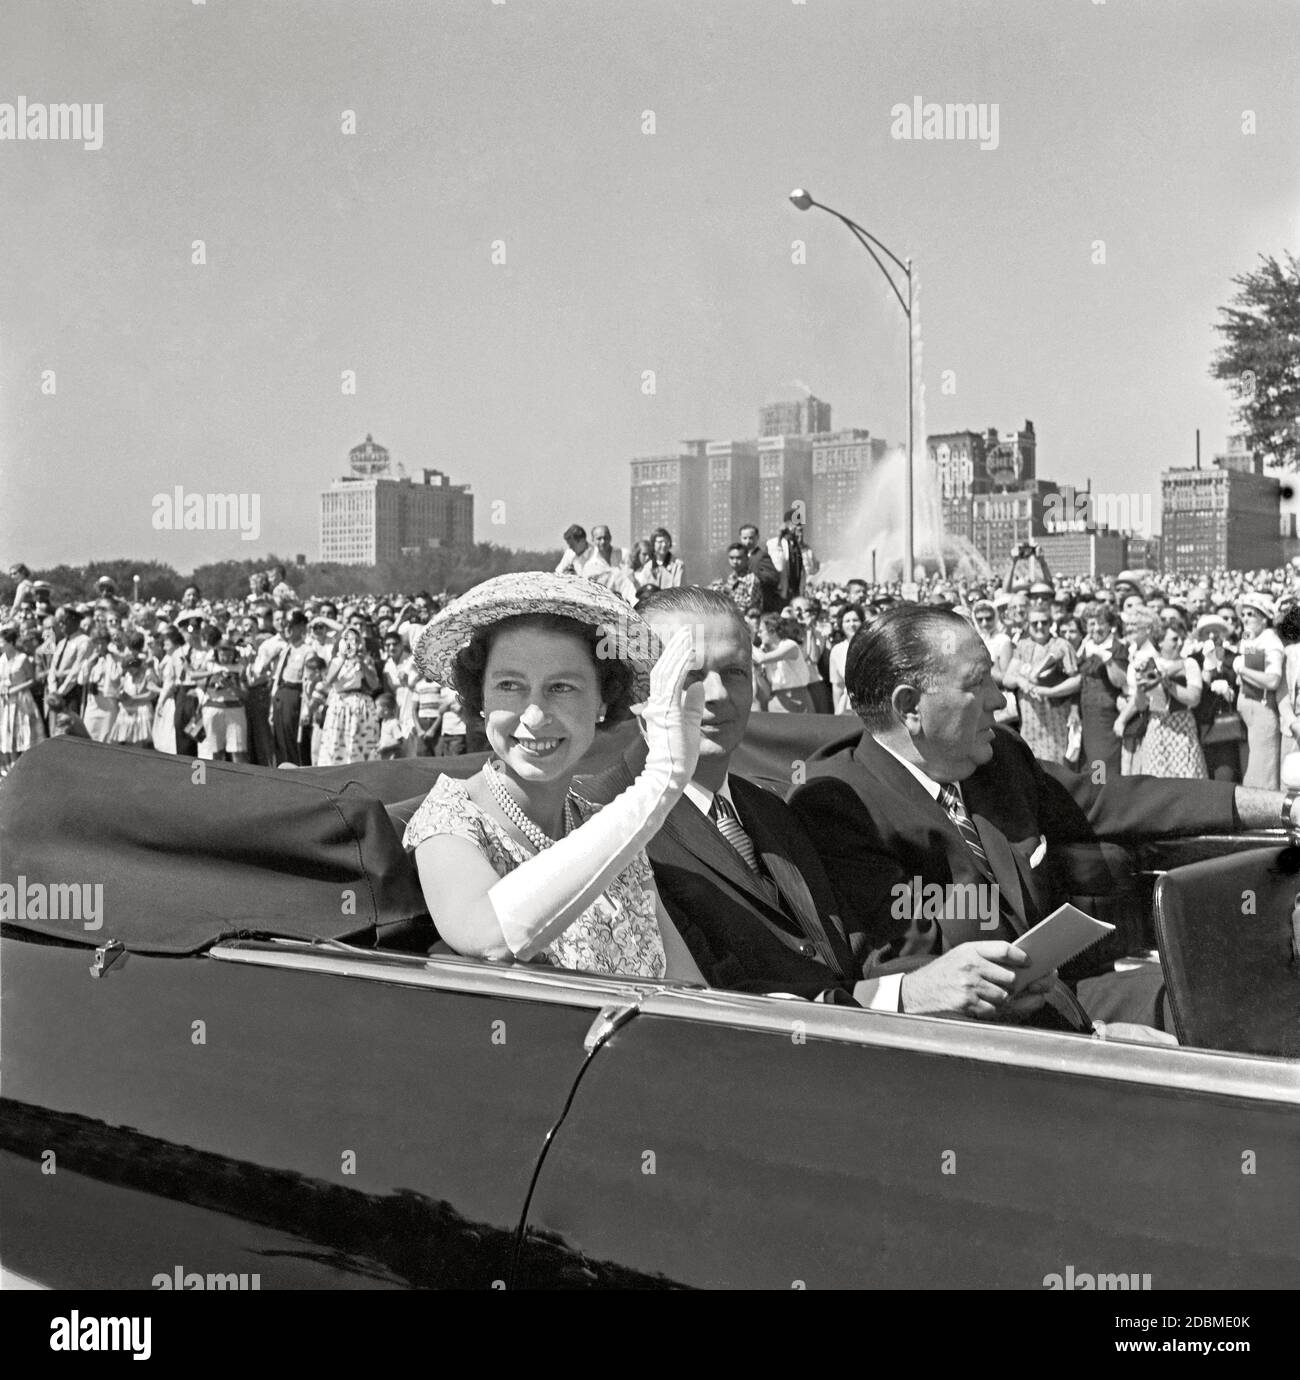 Queen Elizabeth II. Tourt durch Chicago mit dem Gouverneur von Illinois William Stratton und dem Bürgermeister Richard Daley, 6. Juli 1959. Bild von 6 x 6 cm Negativ. Stockfoto